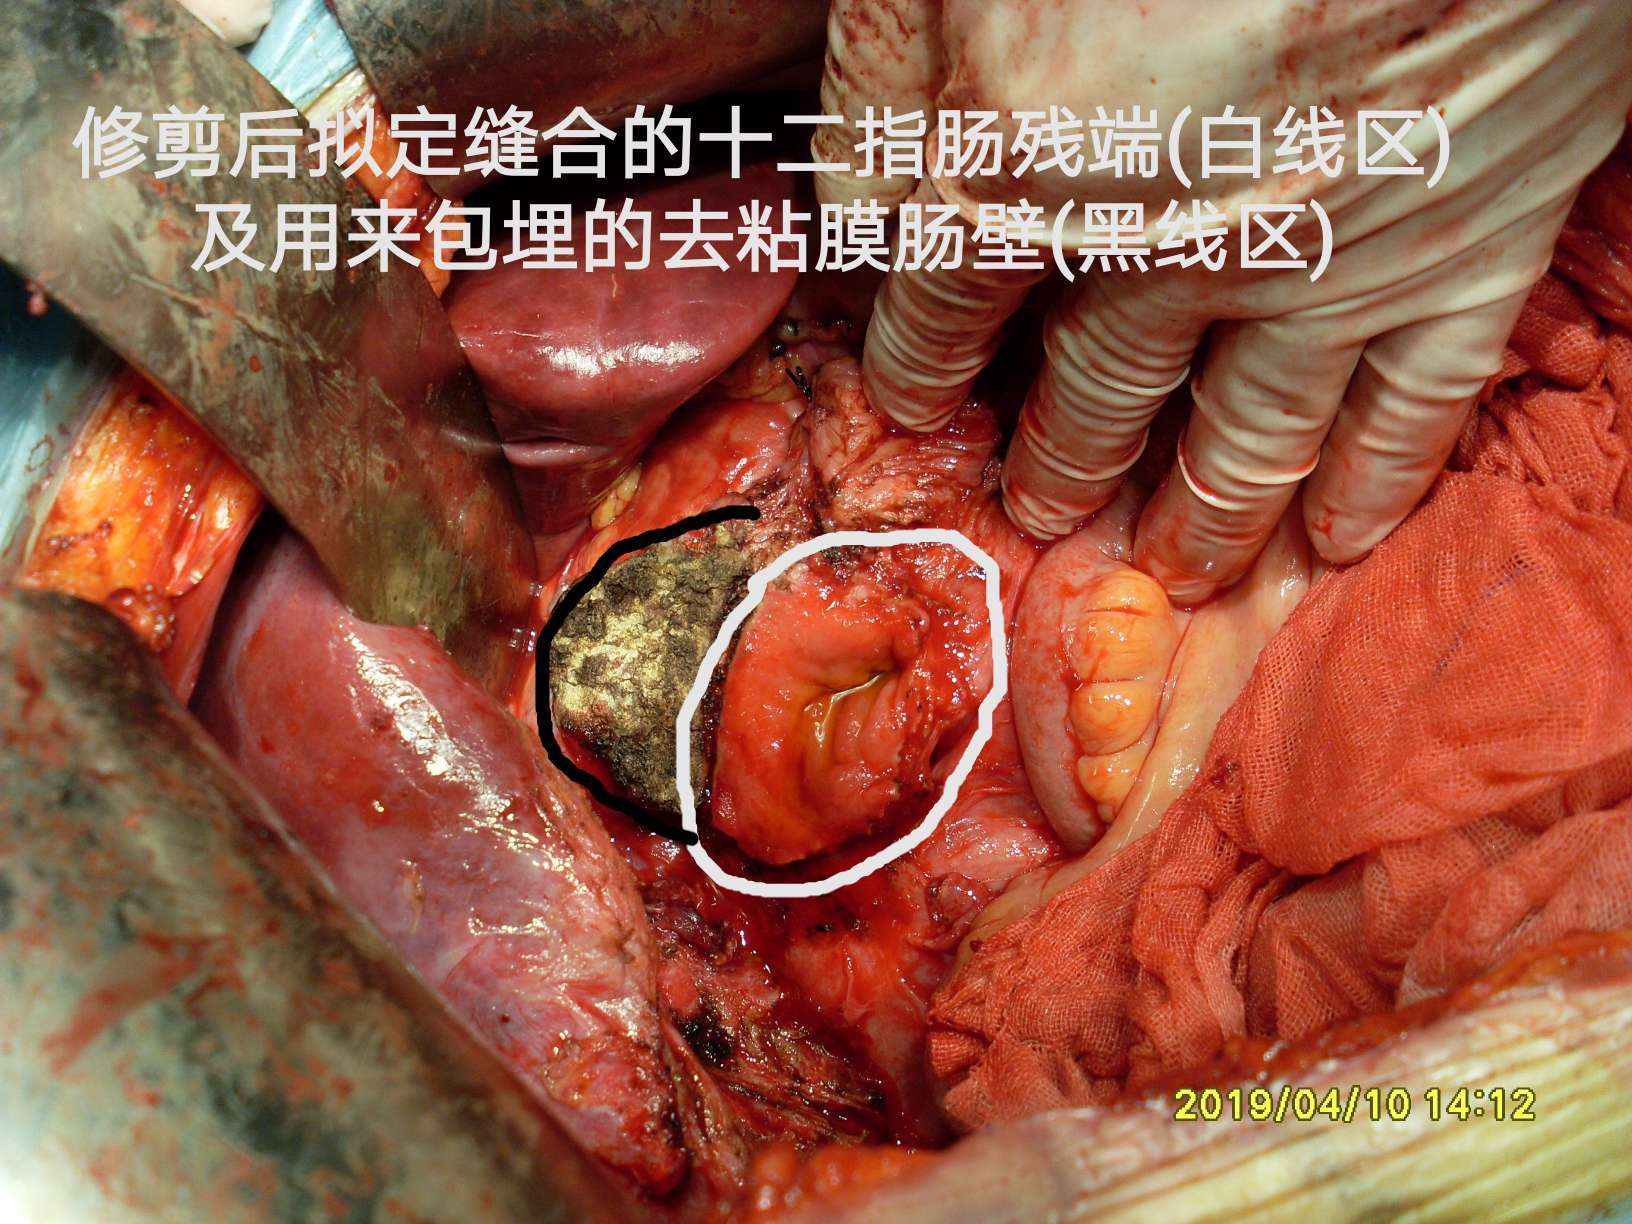 病例(40)--结肠肝曲粘液腺癌突破肠管向外生长! (原创